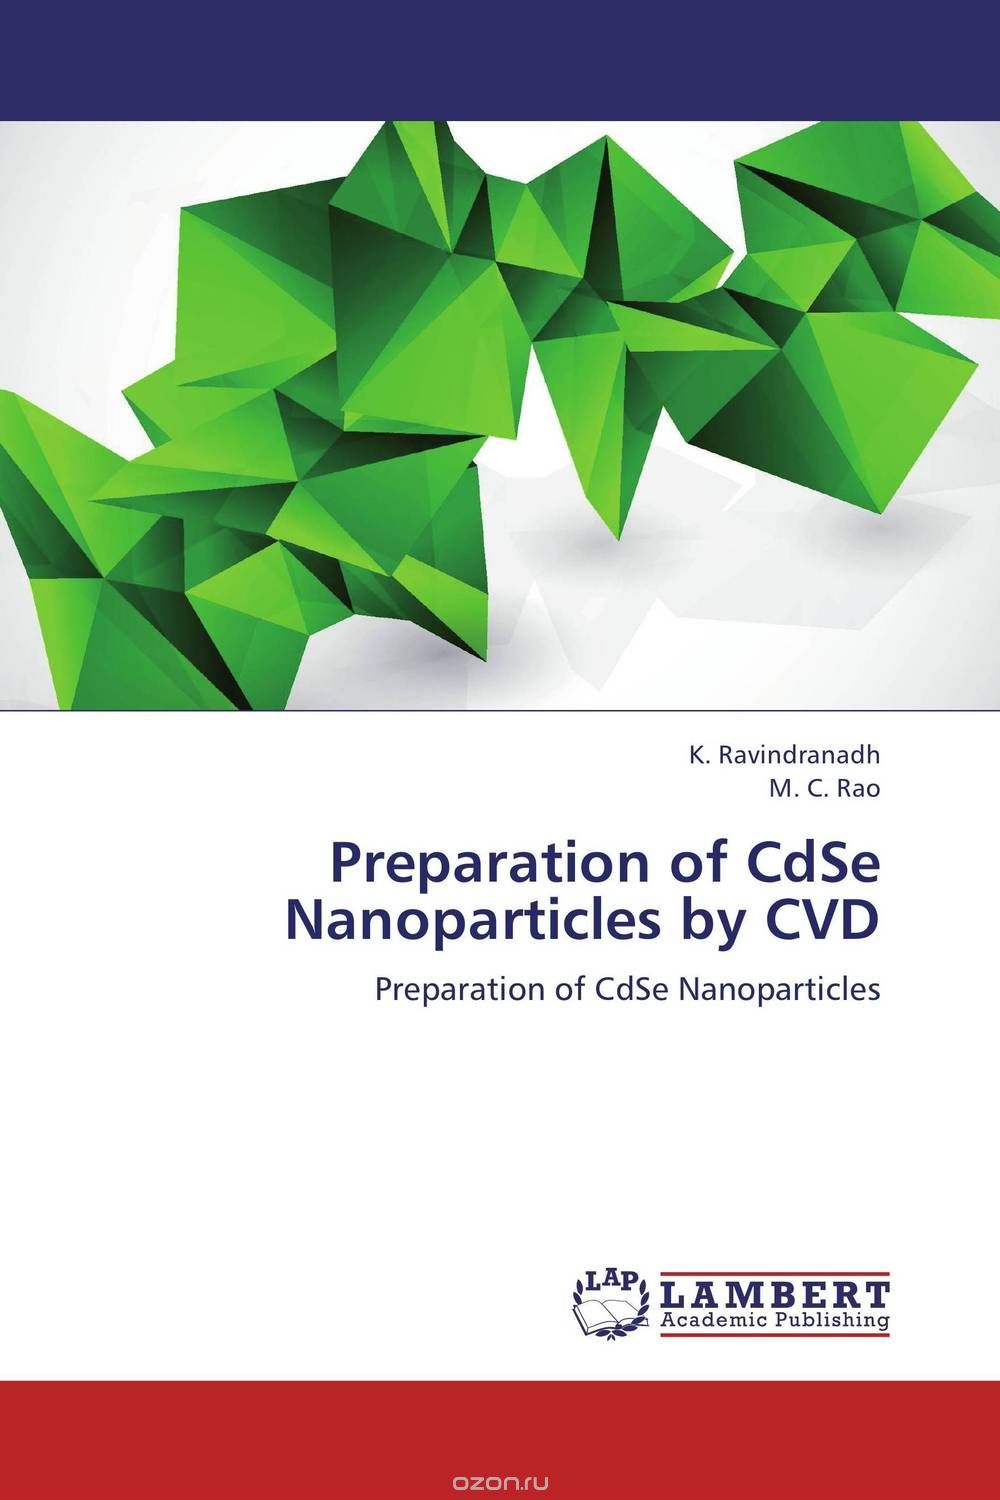 Скачать книгу "Preparation of CdSe Nanoparticles by CVD"